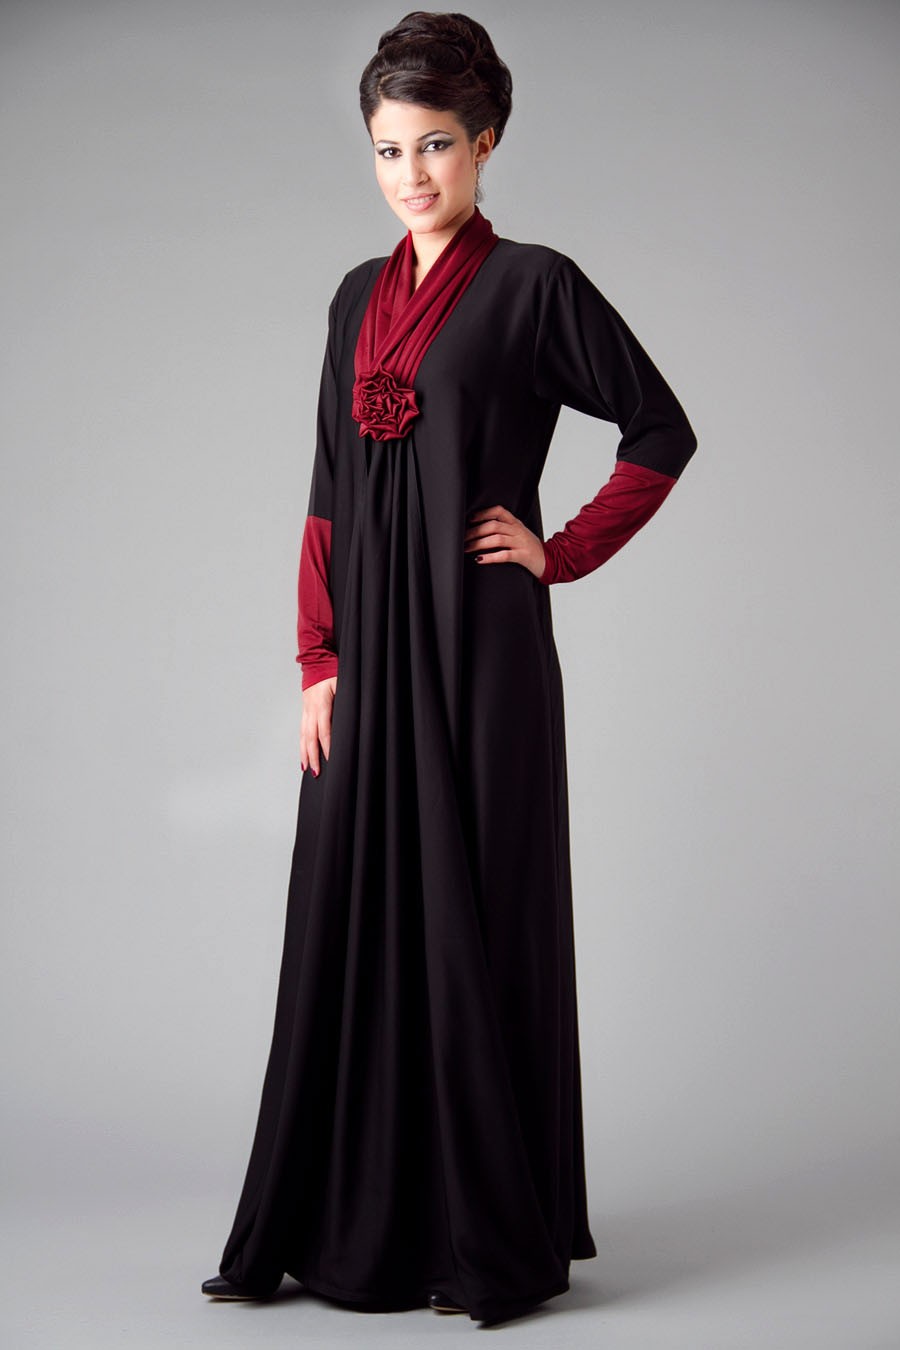 Embroidered Abaya Designs 2013 Islamic Abaya Dress Fashion 201314